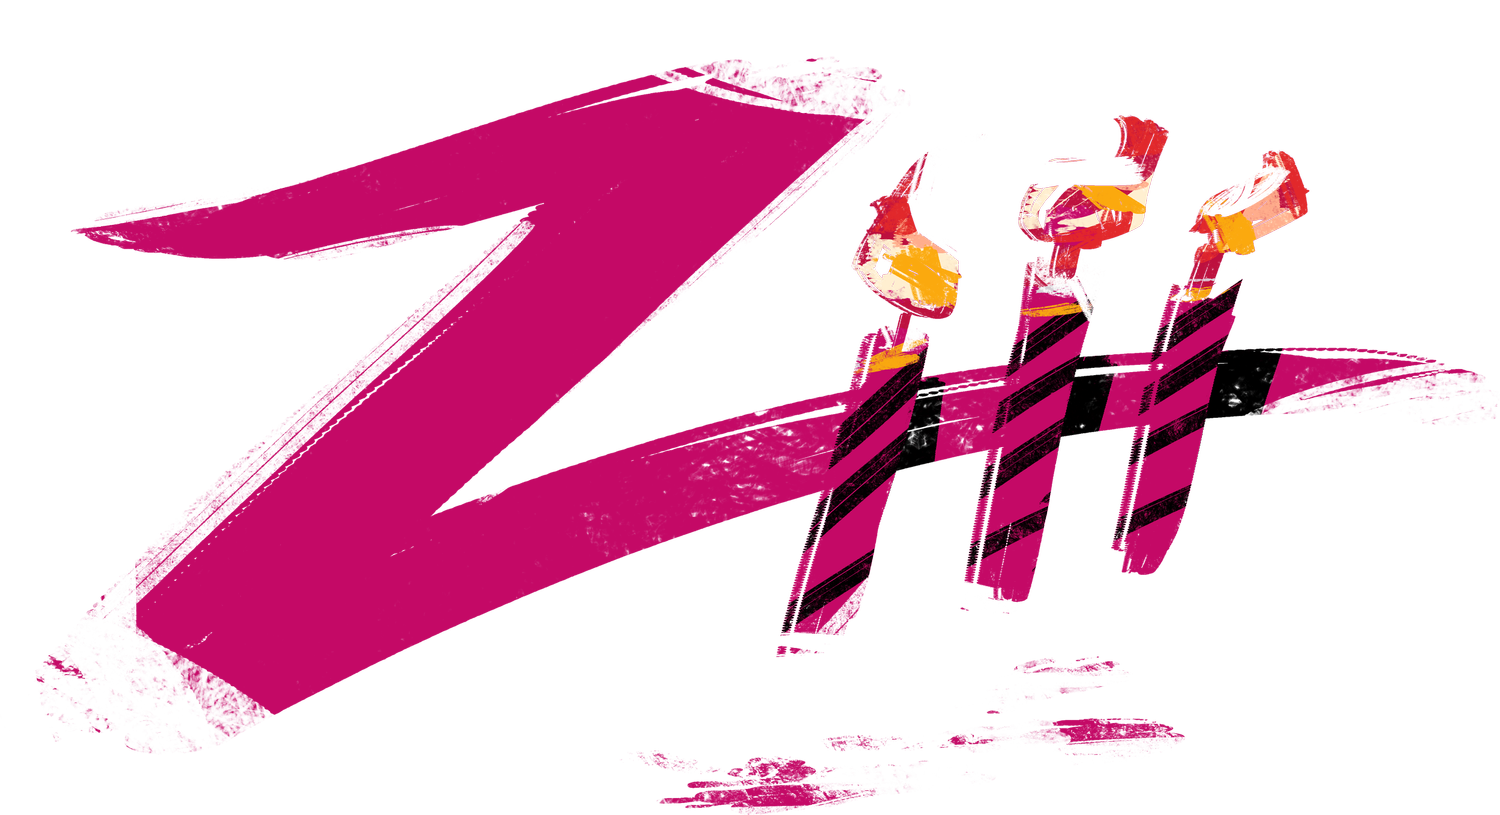 ZK